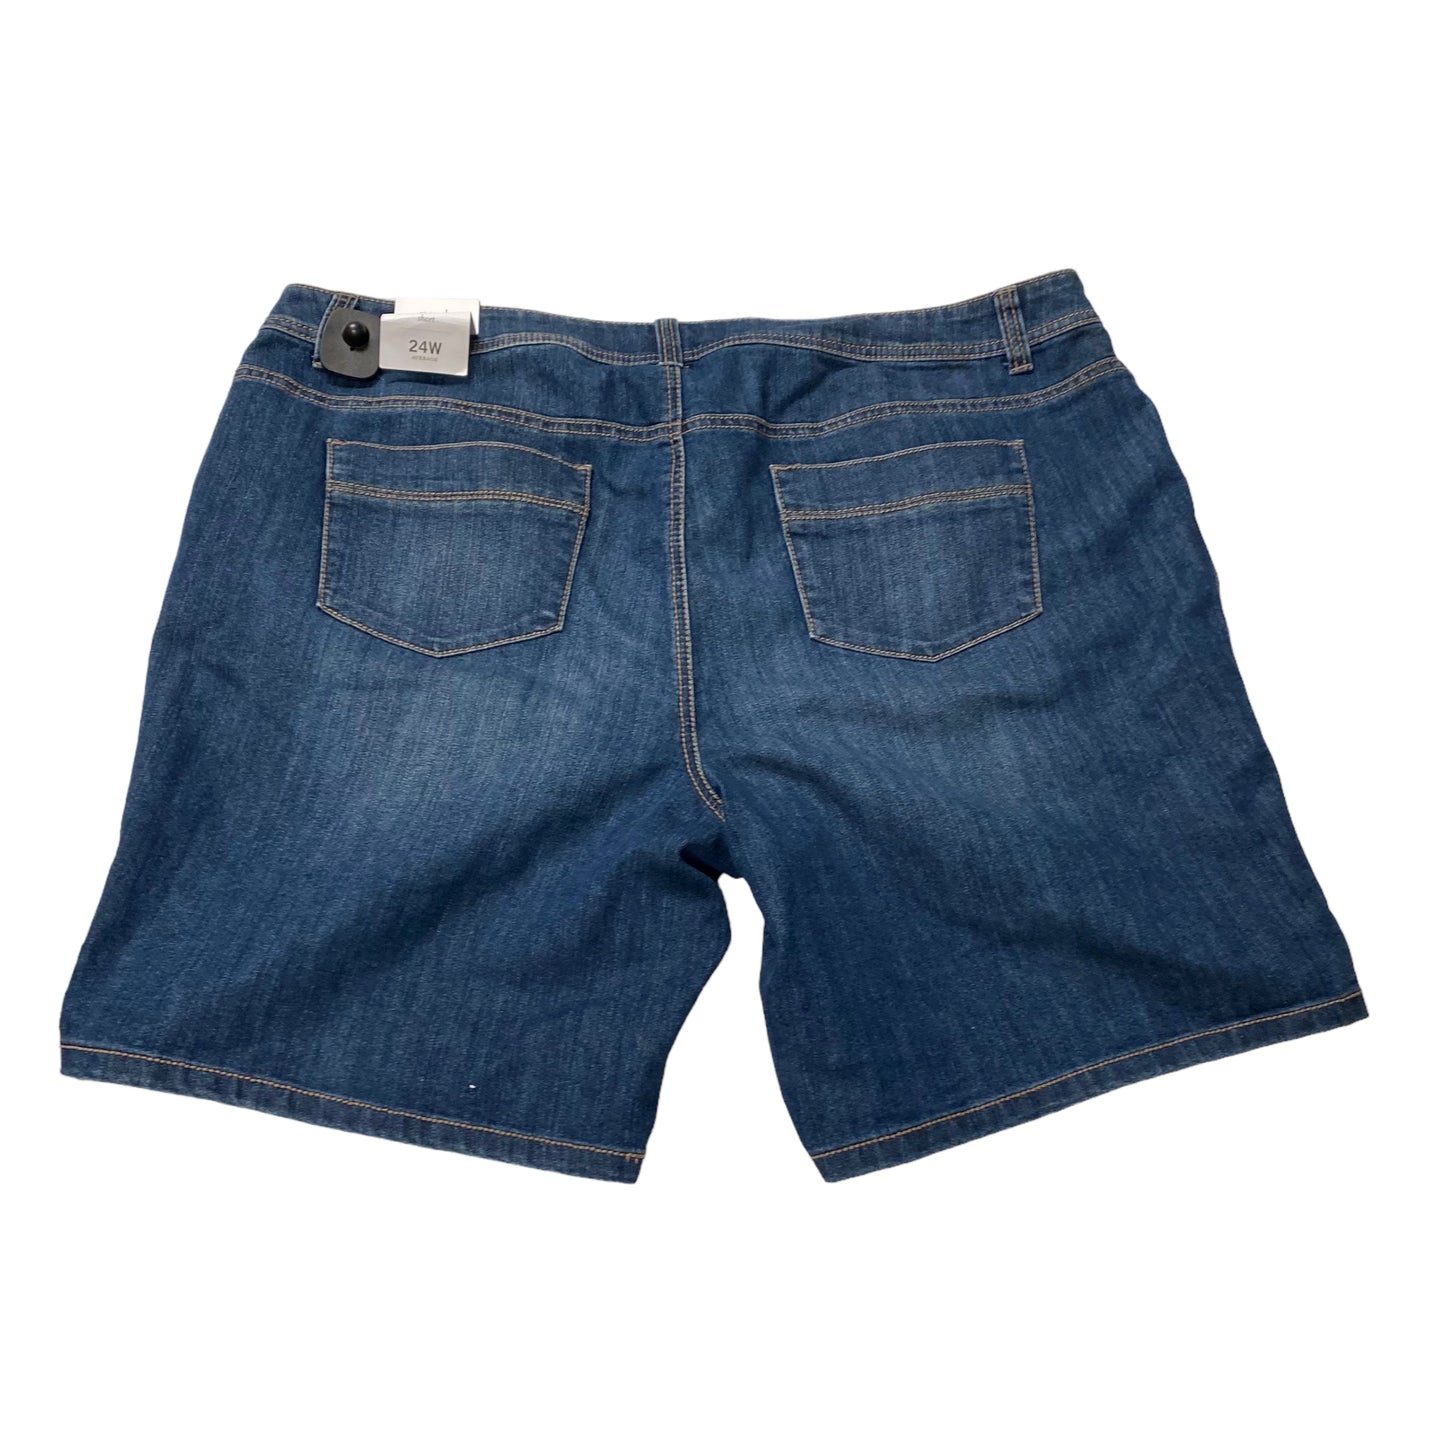 Shorts By Cj Banks  Size: 24